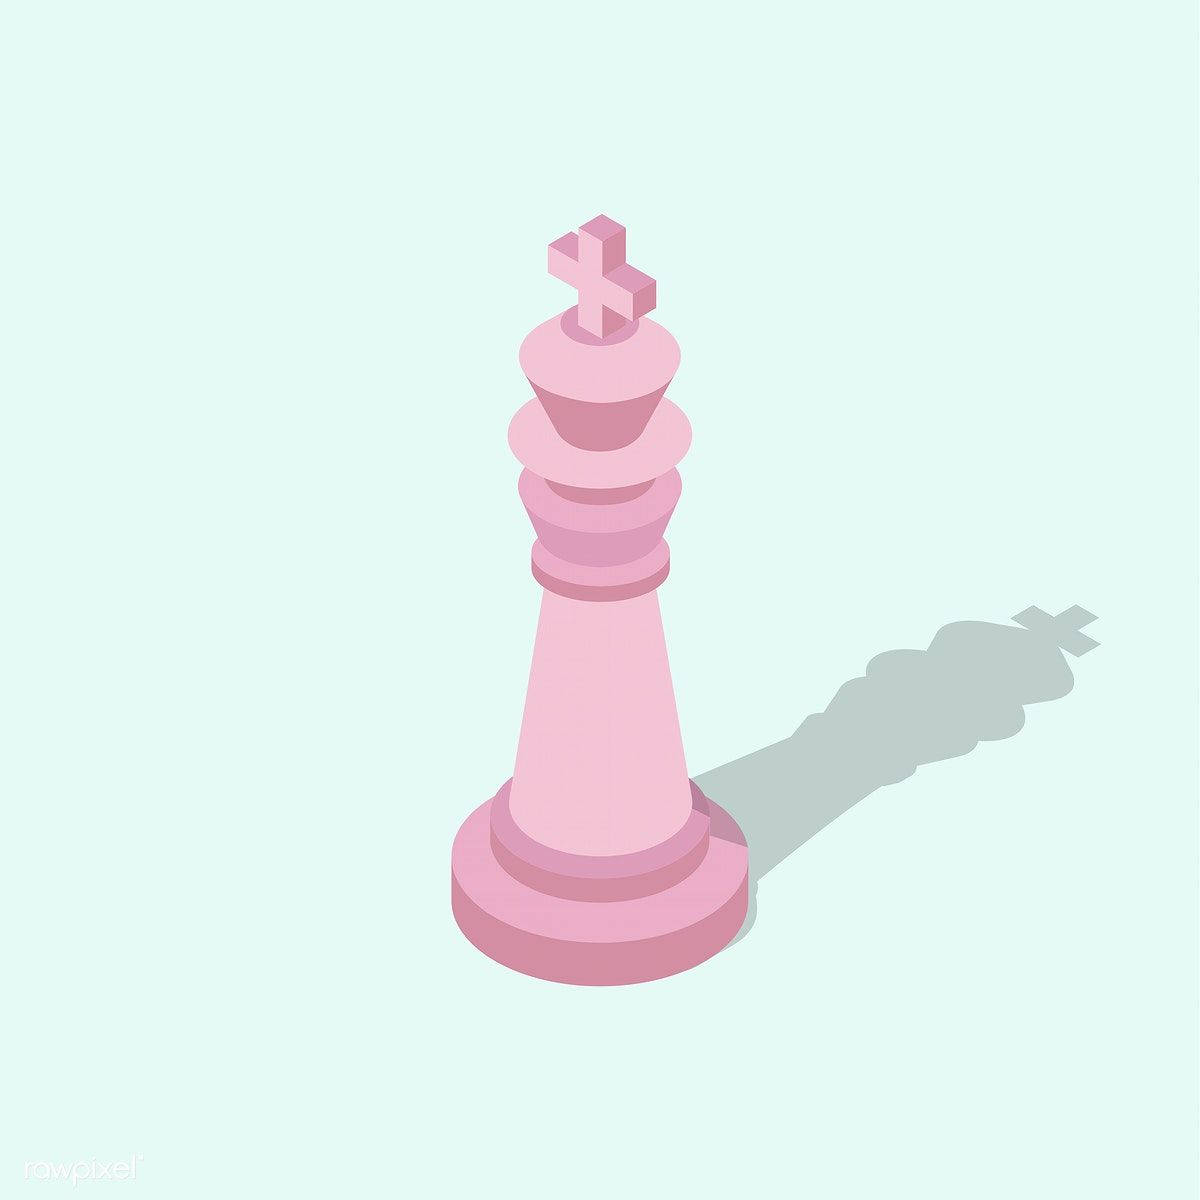 Minimalistic Pink Chess King